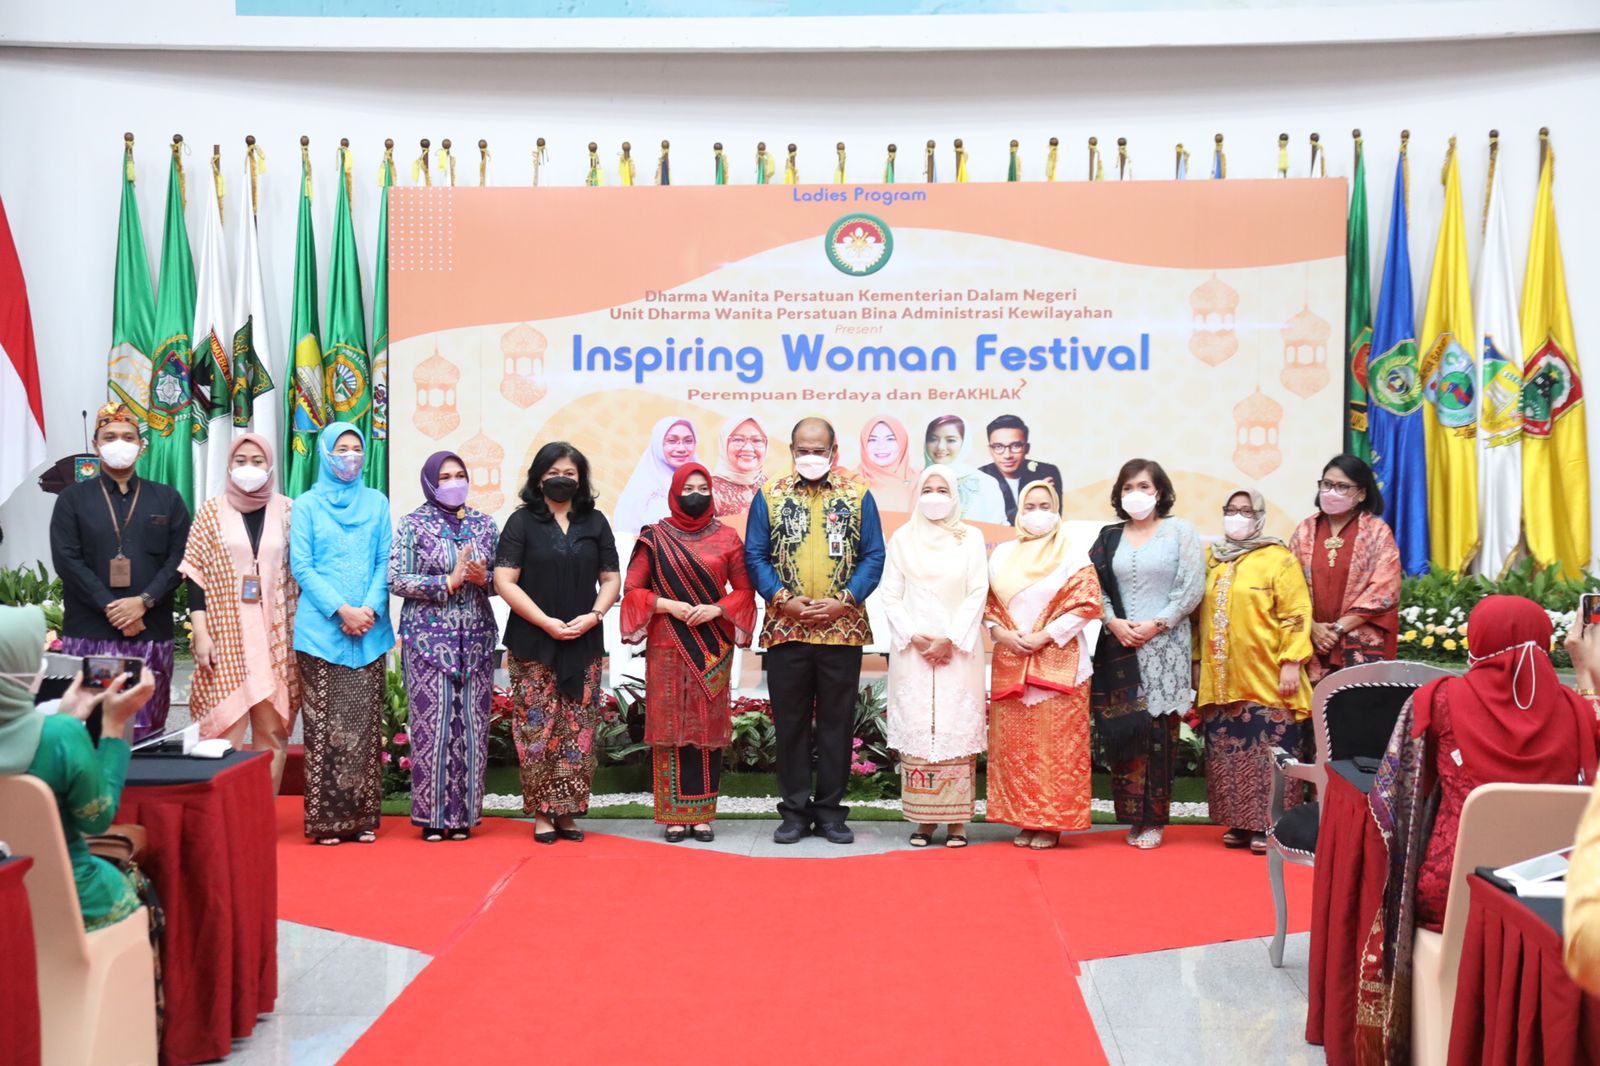 Peringati Hari Kartini, DWP Kemendagri dan DWP Ditjen Bina Adwil Gelar Inspiring Woman Festival